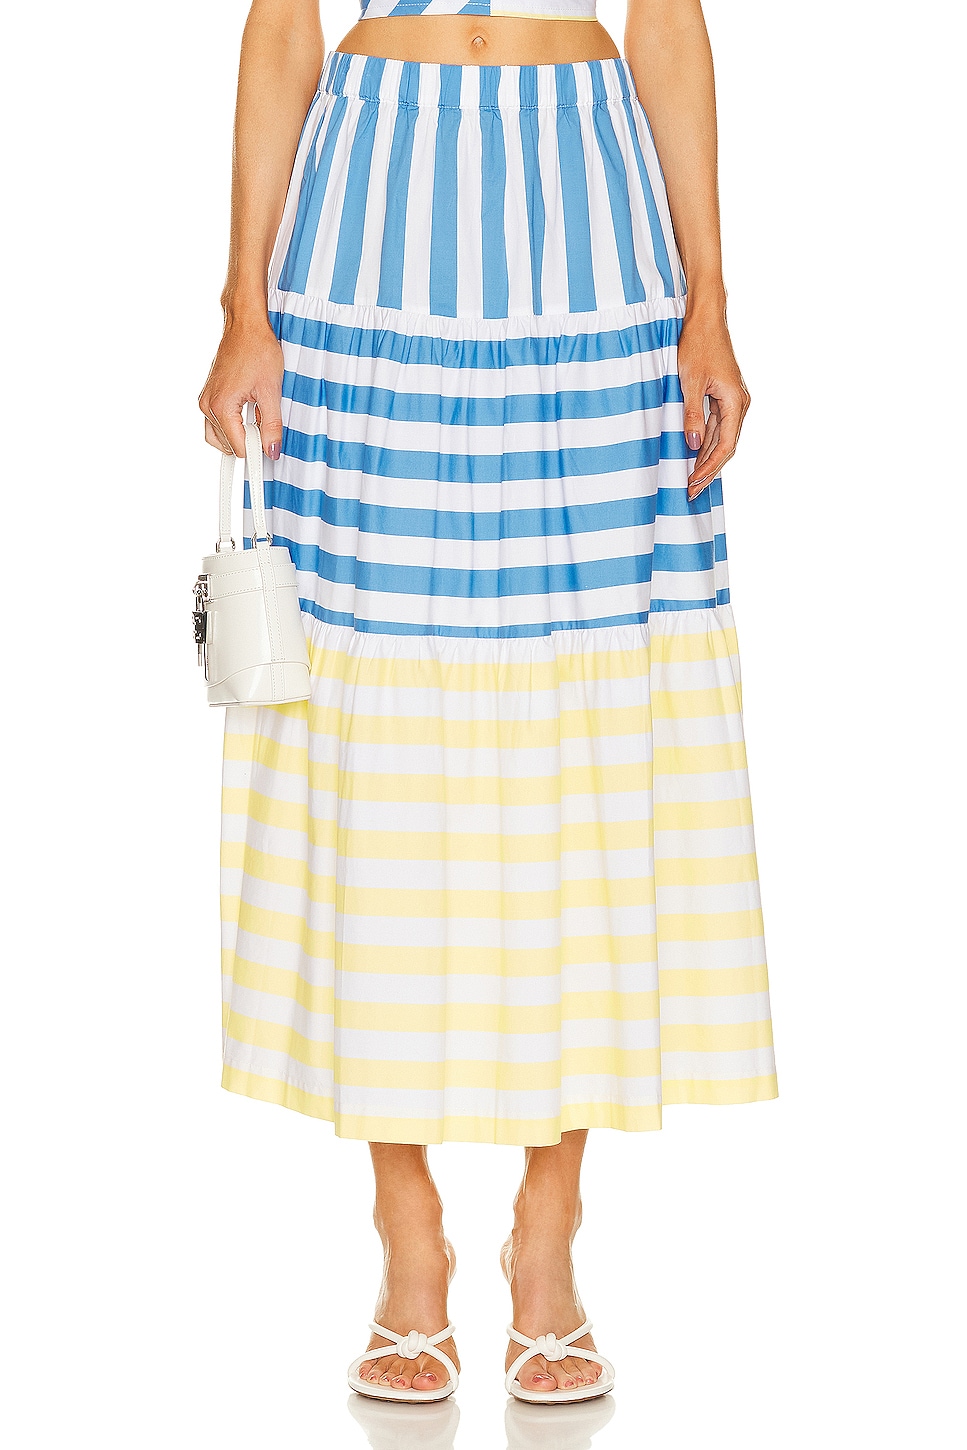 Image 1 of Staud Idalino Skirt in Buttercup Seashore Stripe